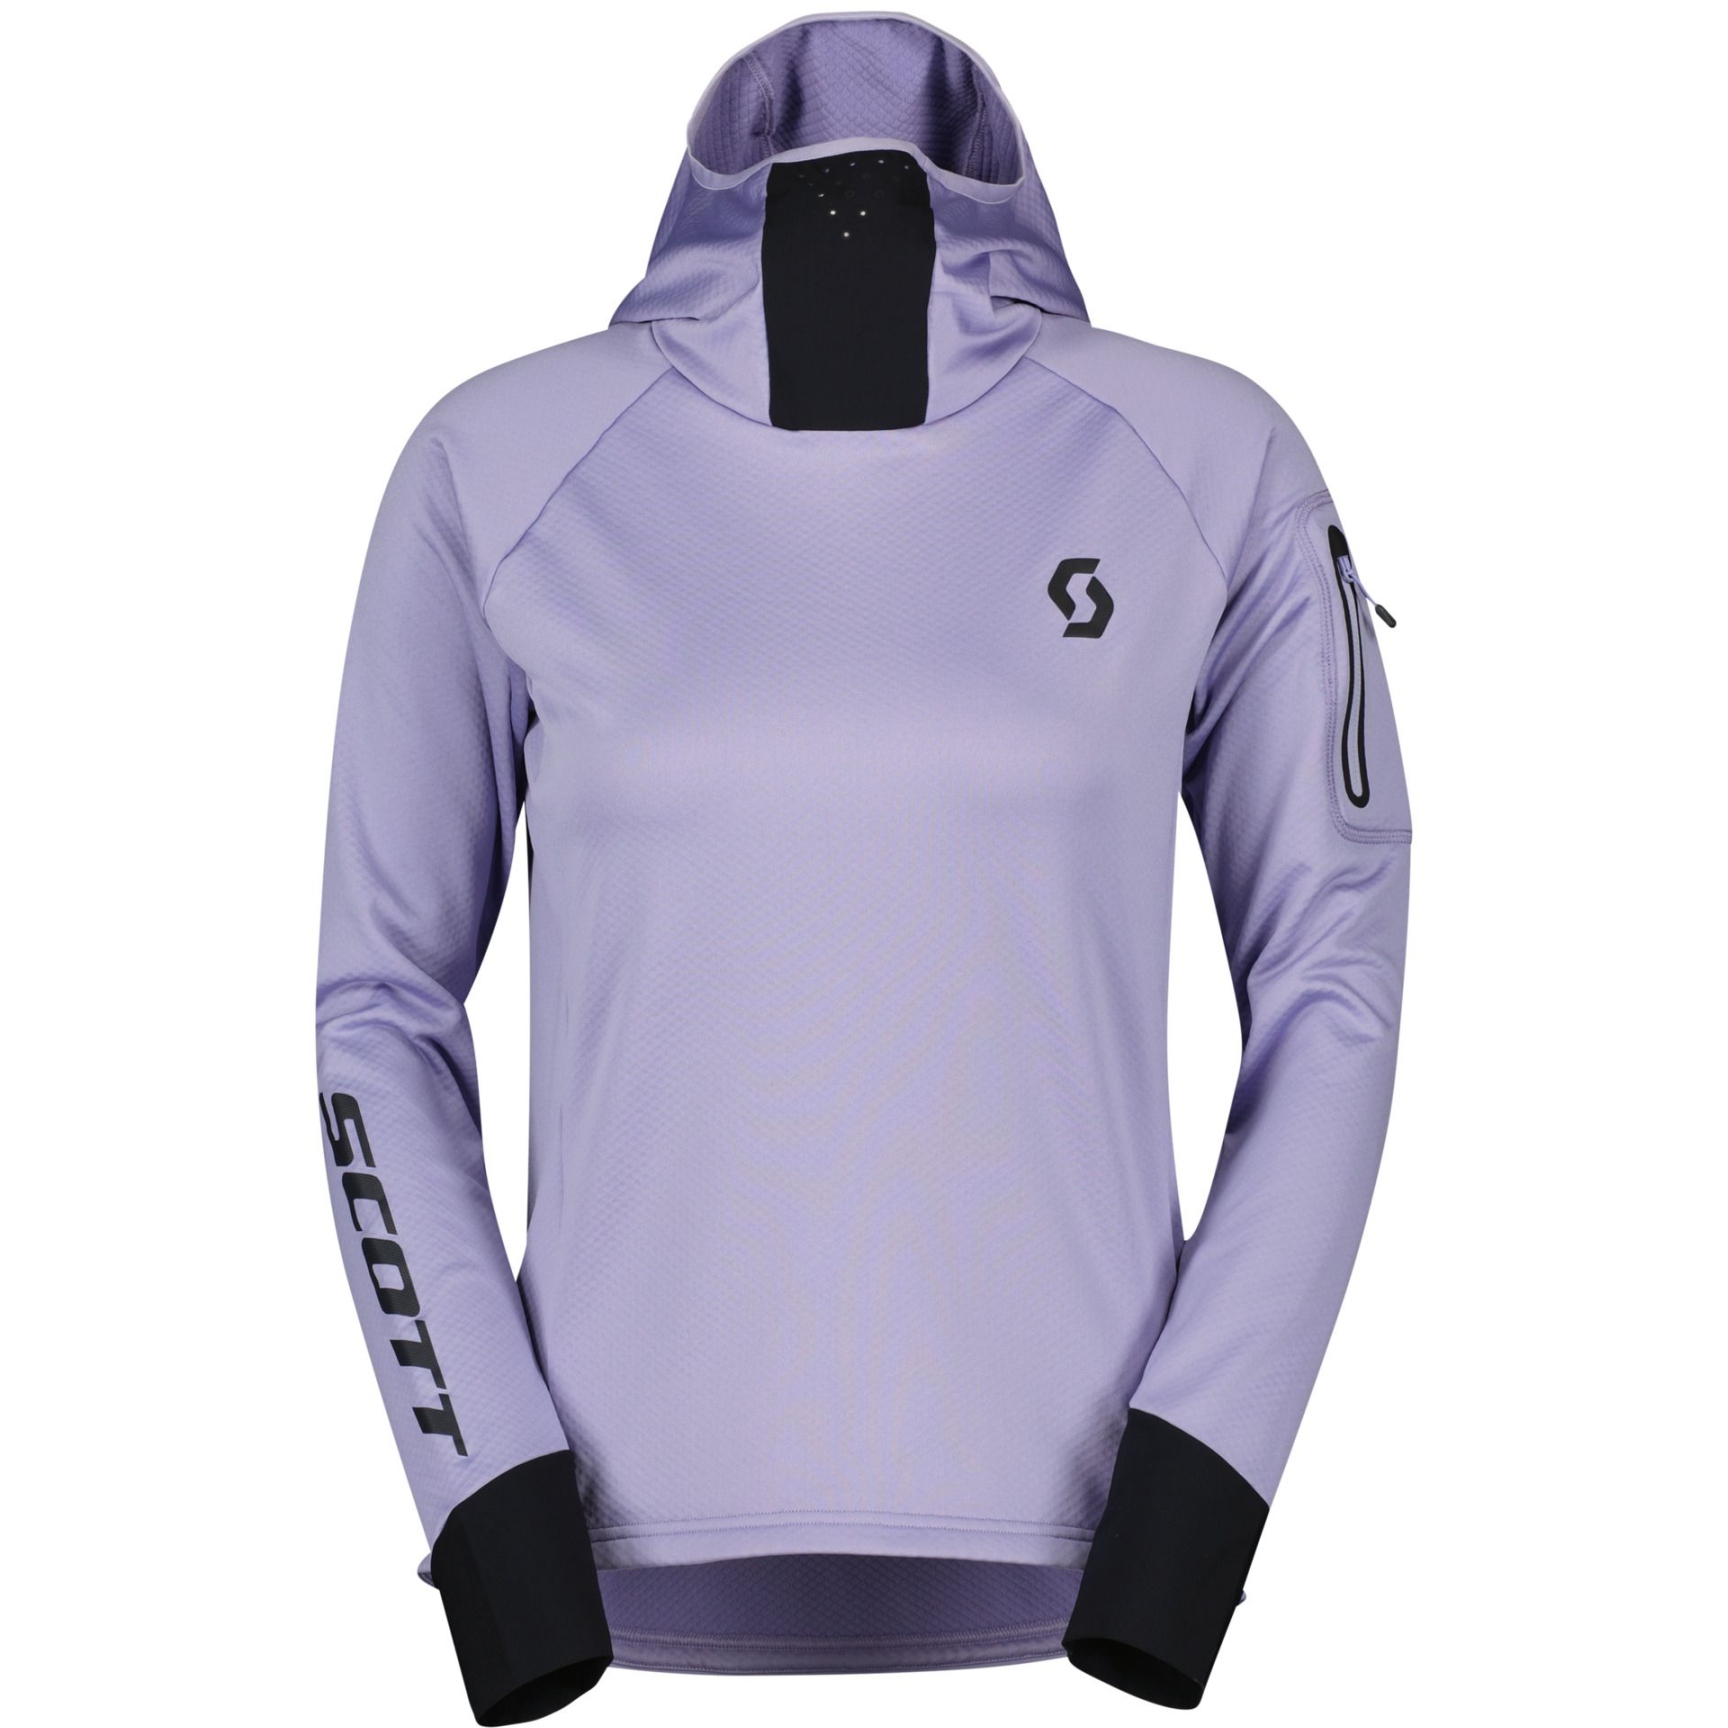 Produktbild von SCOTT Trail Storm Langarm Kapuzenpullover Damen - heather purple